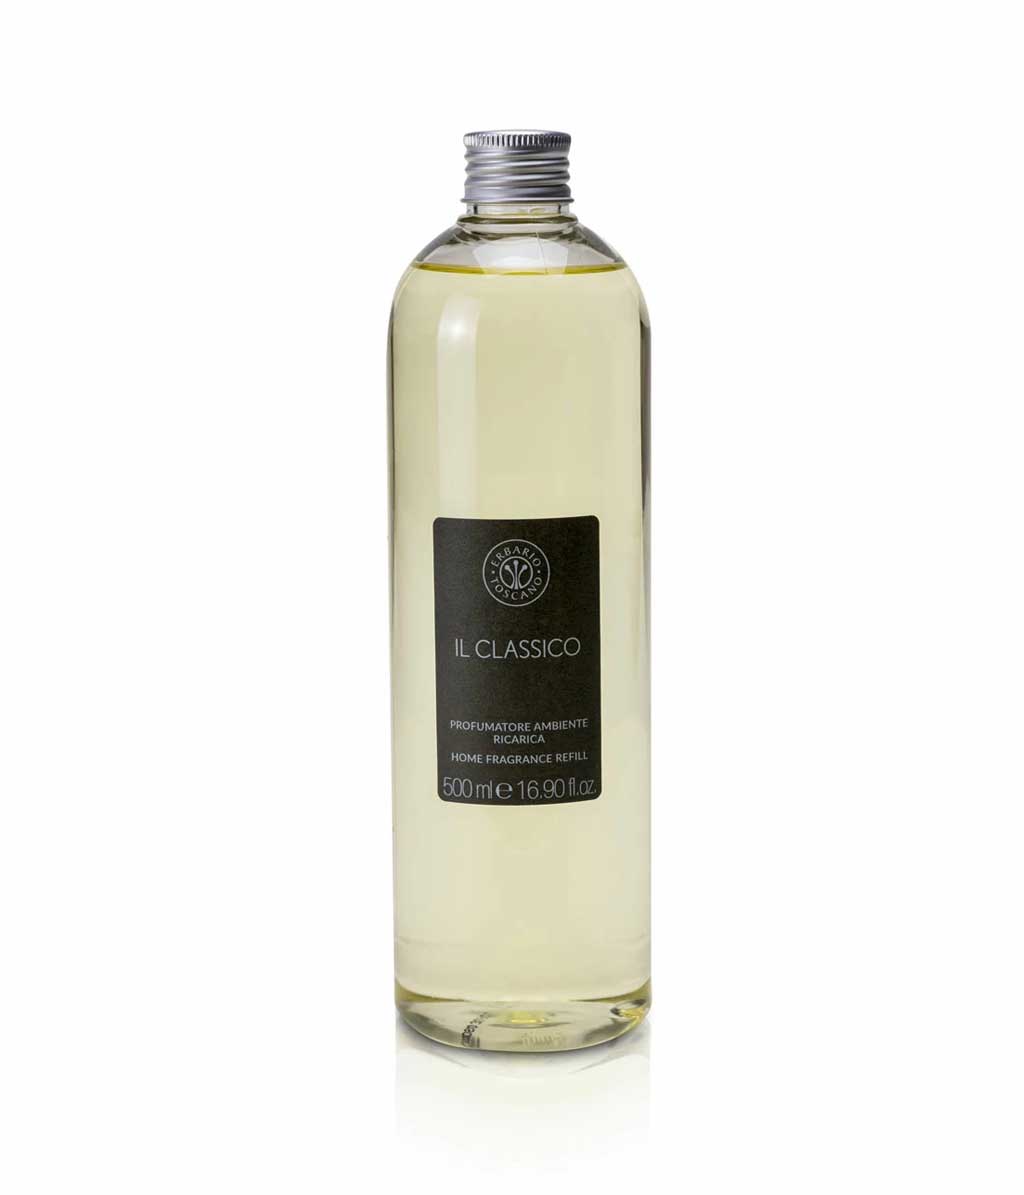 Erbario Home Fragrance (Diffuser Refill) - 500ml - Il Classico